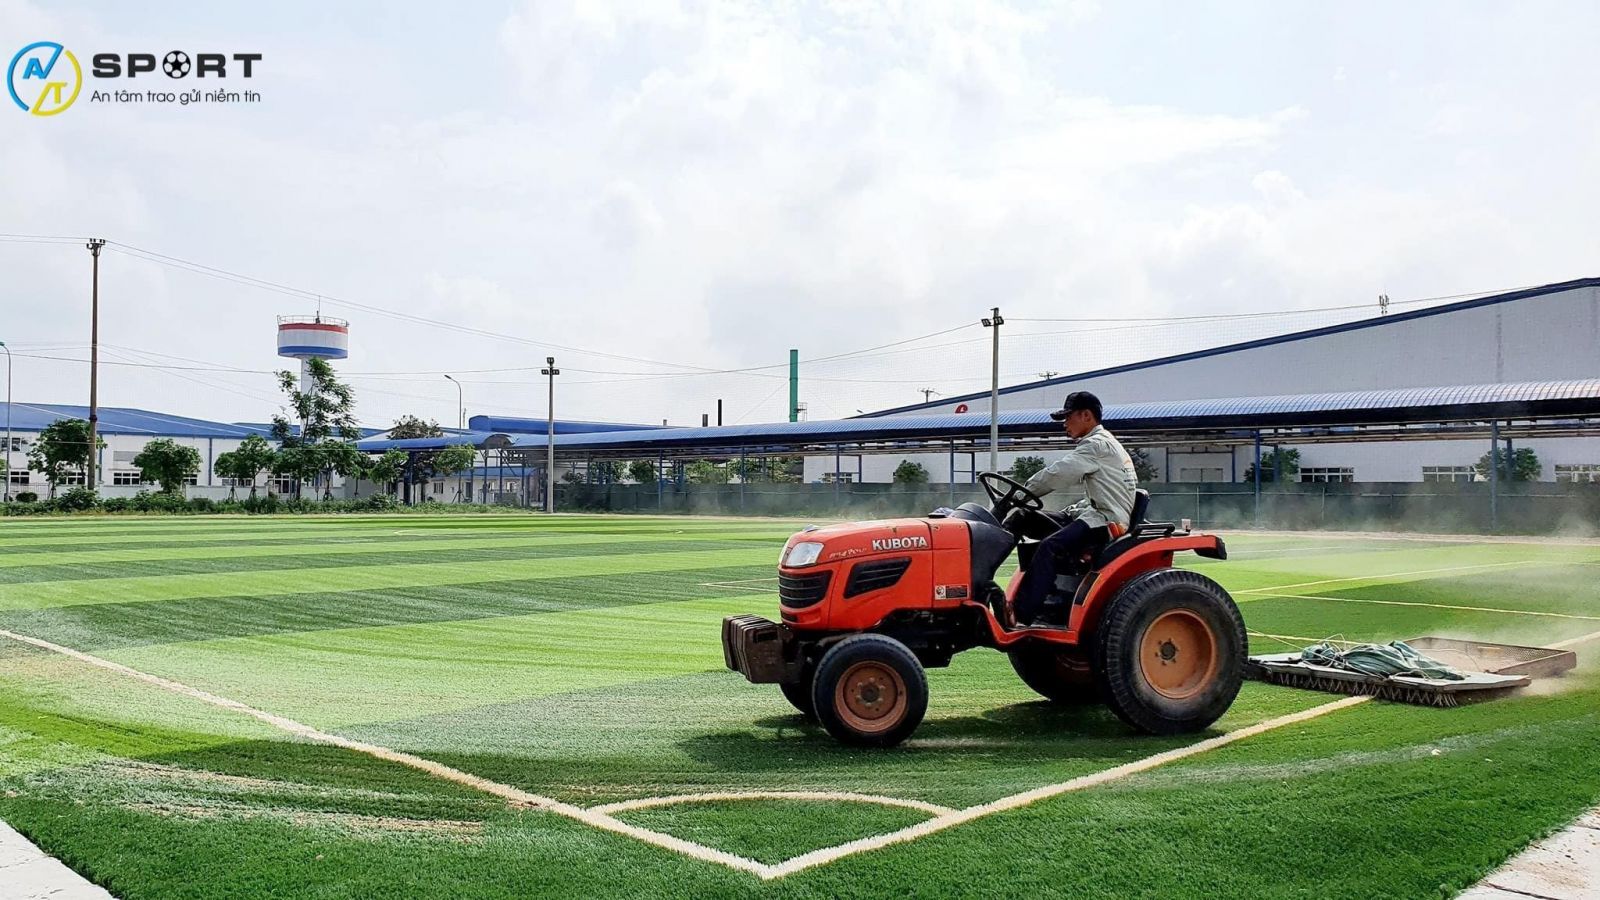 Thi công cỏ nhân tạo sân bóng tại Phan Thiết, Bình Thuận